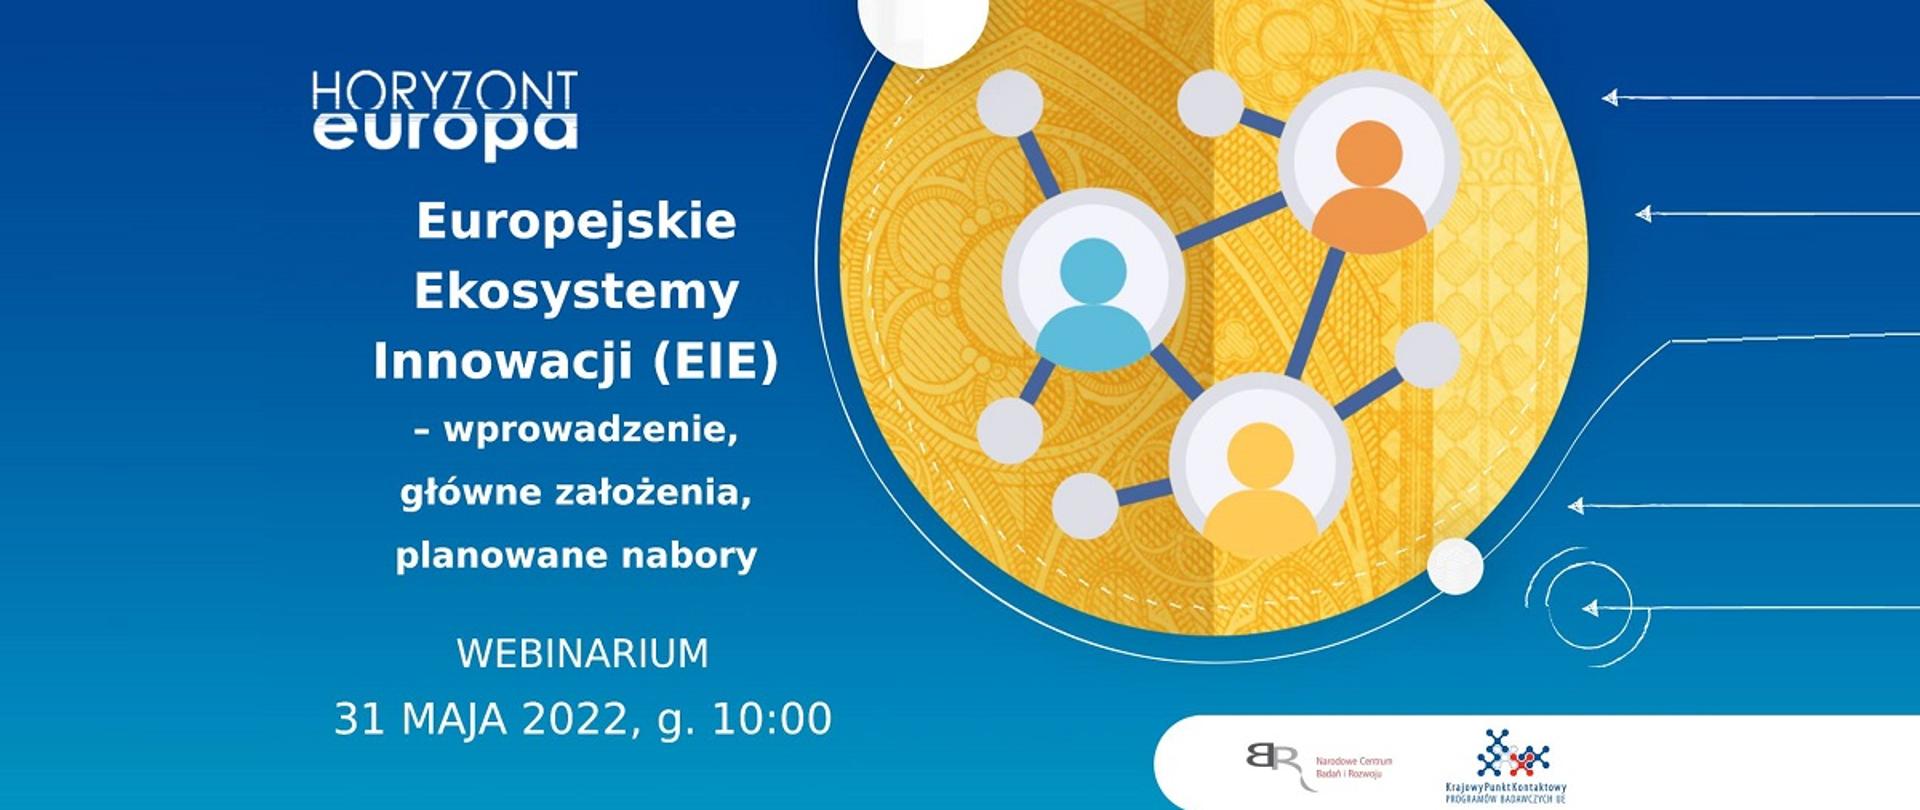 Horyzont Europa
Europejskie Ekosystemy Innowacji (EIE) - wprowadzenie, główne założenia, planowane nabory
Webinarium 31 maja 2022, g. 10:00